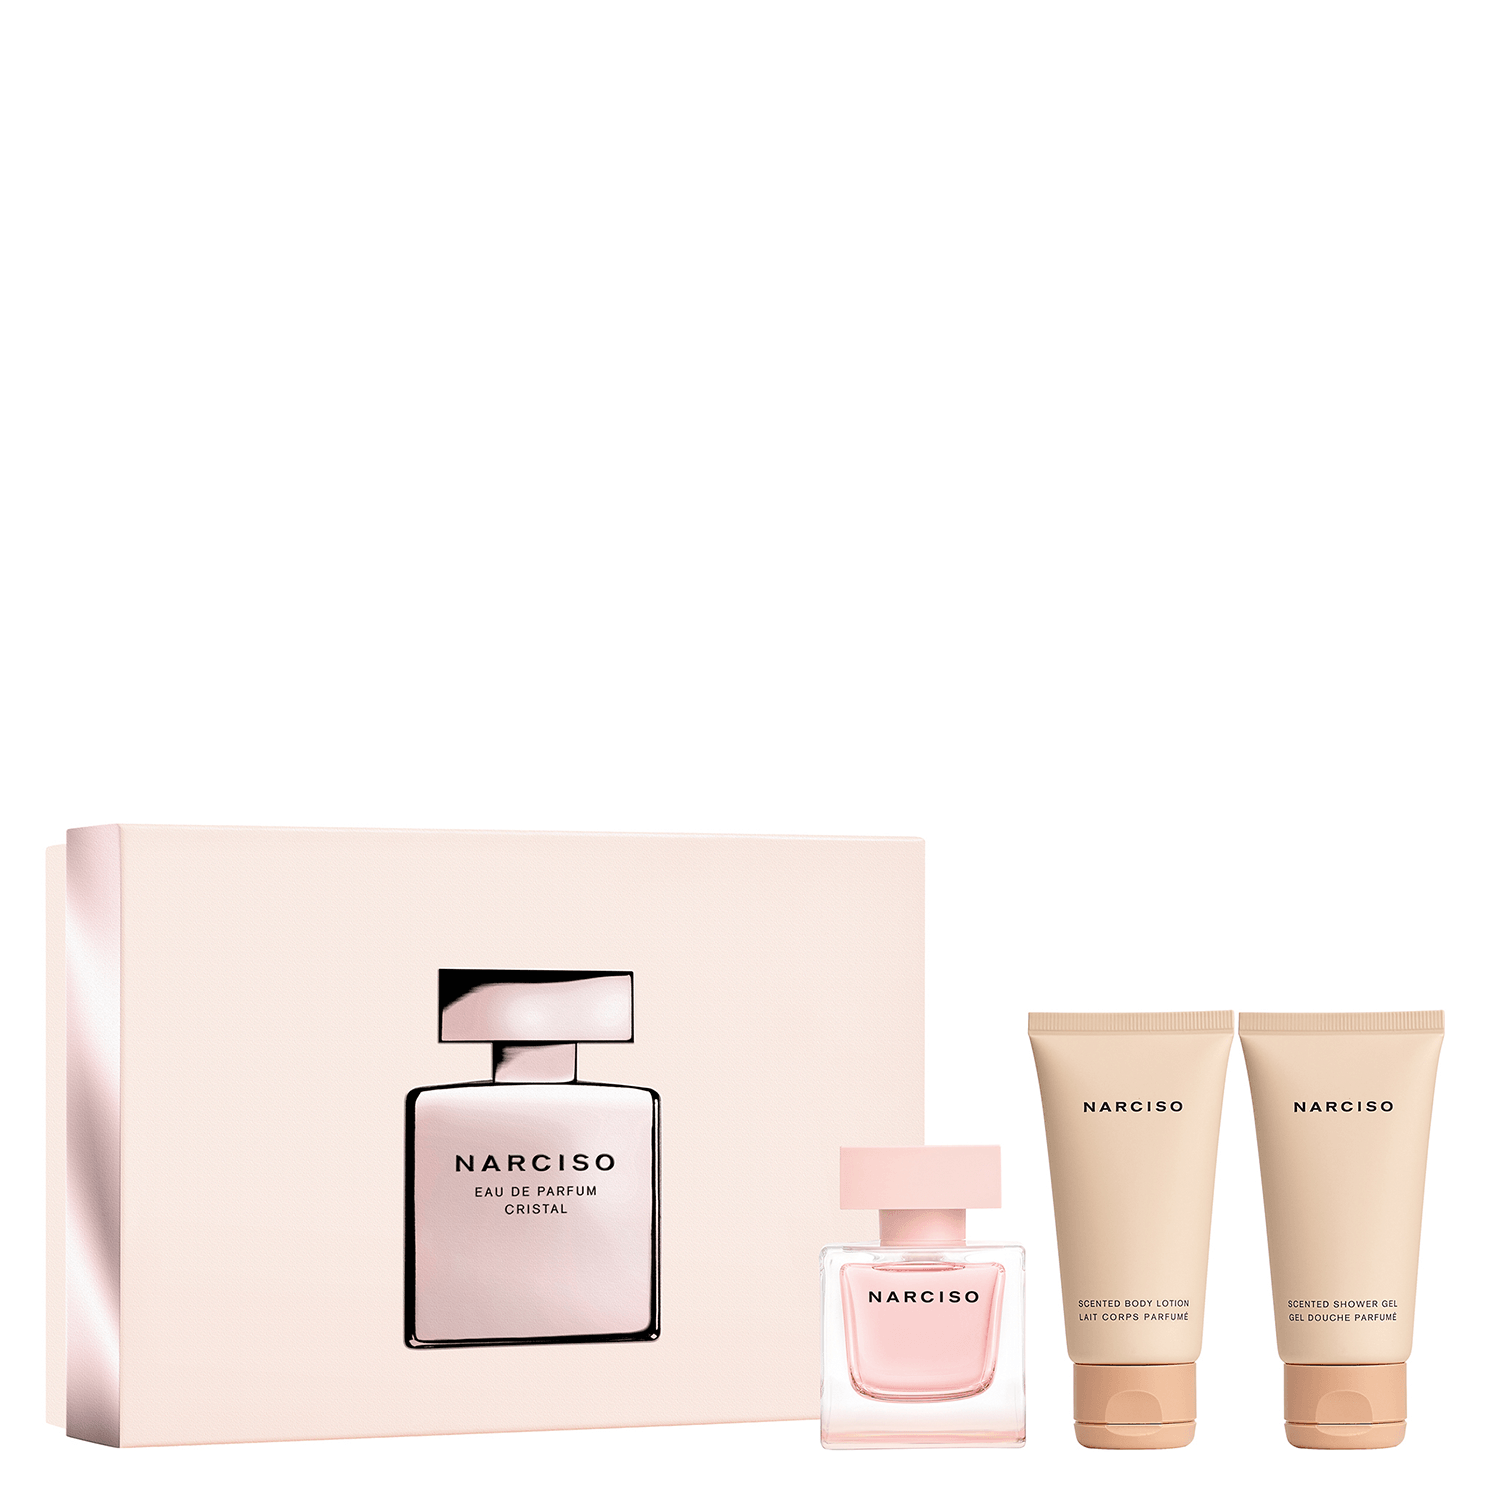 Product image from Narciso - Cristal Eau de Parfum Kit